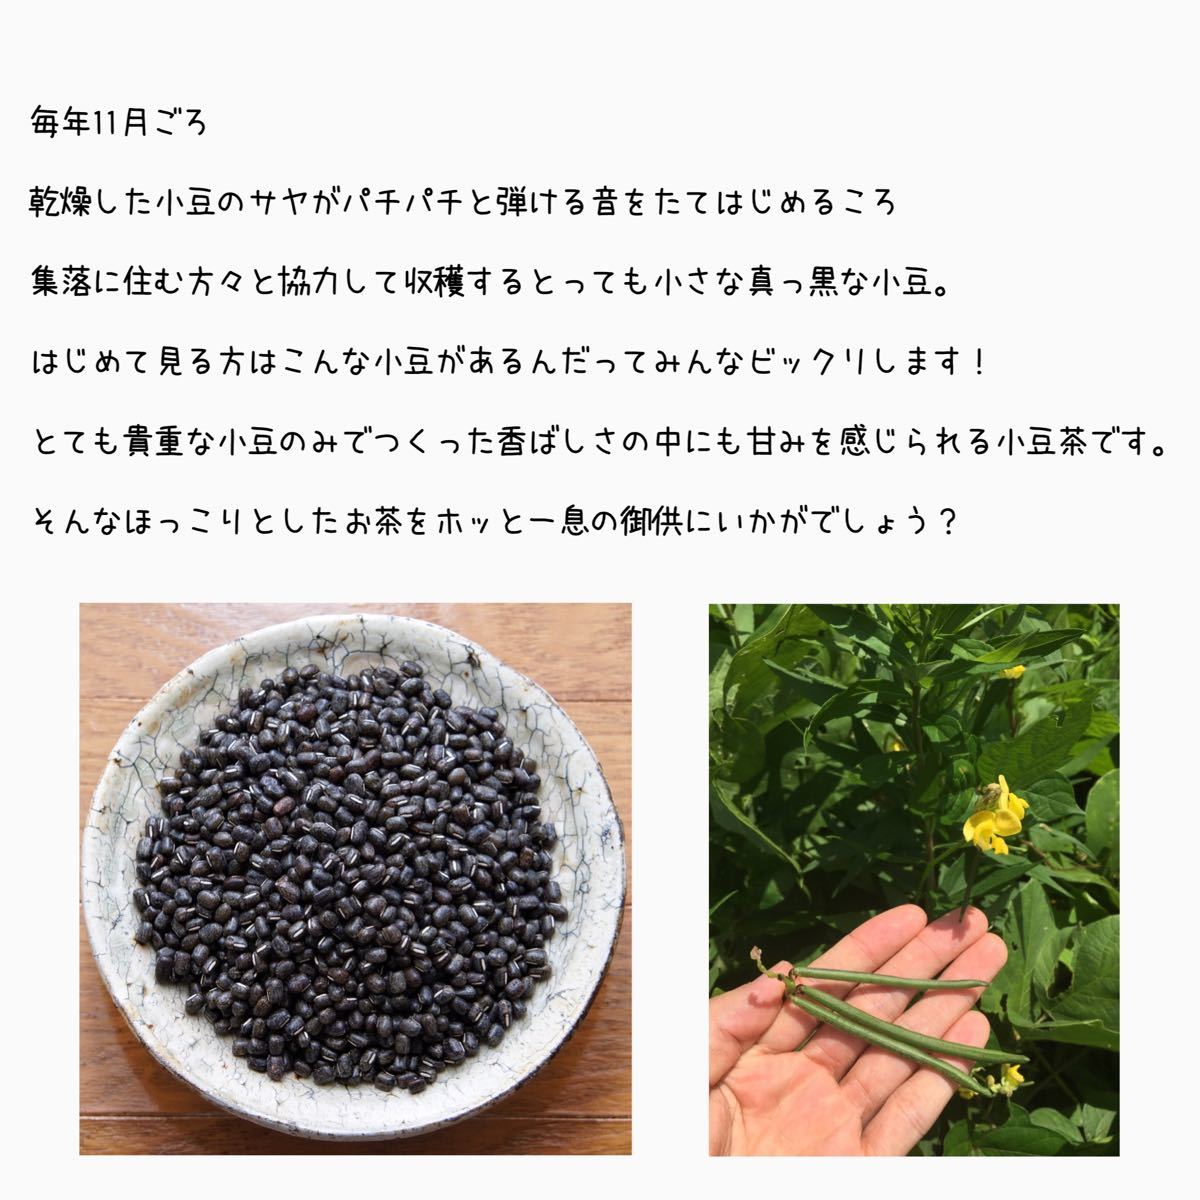 【天然黒小豆100%】石川県産 ヤブツルアズキの小豆茶 70g×2 ★14リットル分★